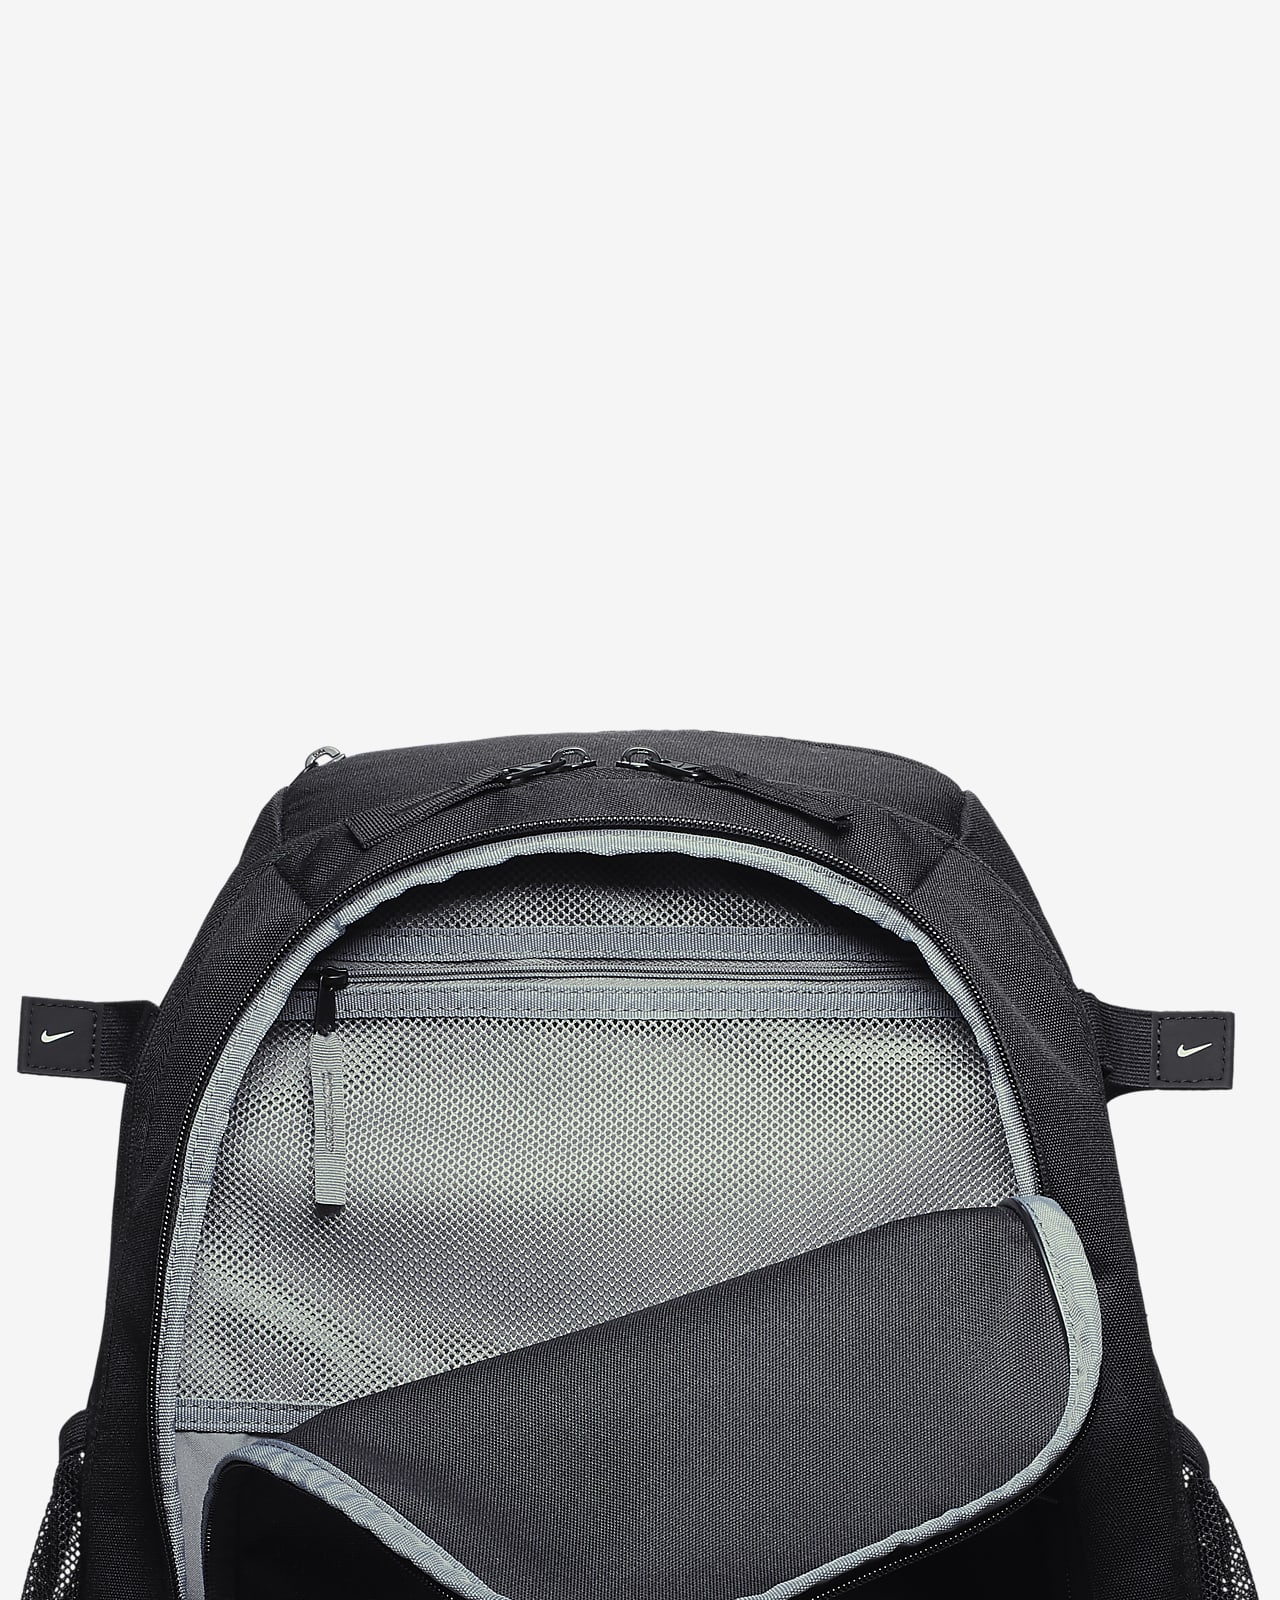 white nike vapor backpack